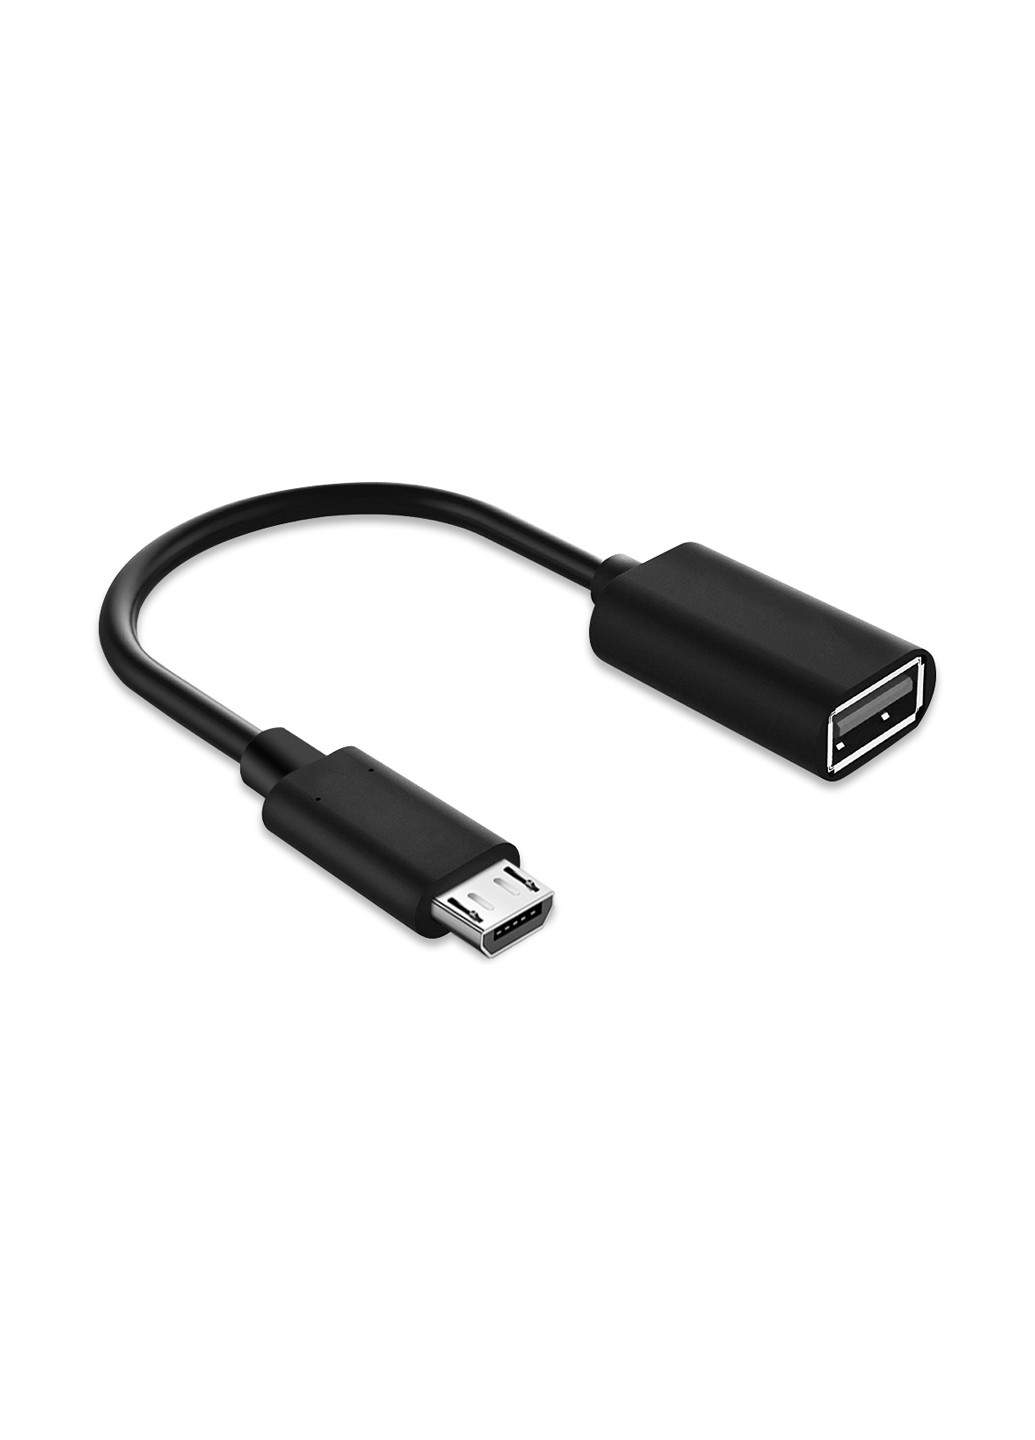 Перехідник OTG AC-130 USB - MicroUSB з кабелем чорний XoKo otg ac-130 usb - microusb с кабелем черный (144530481)